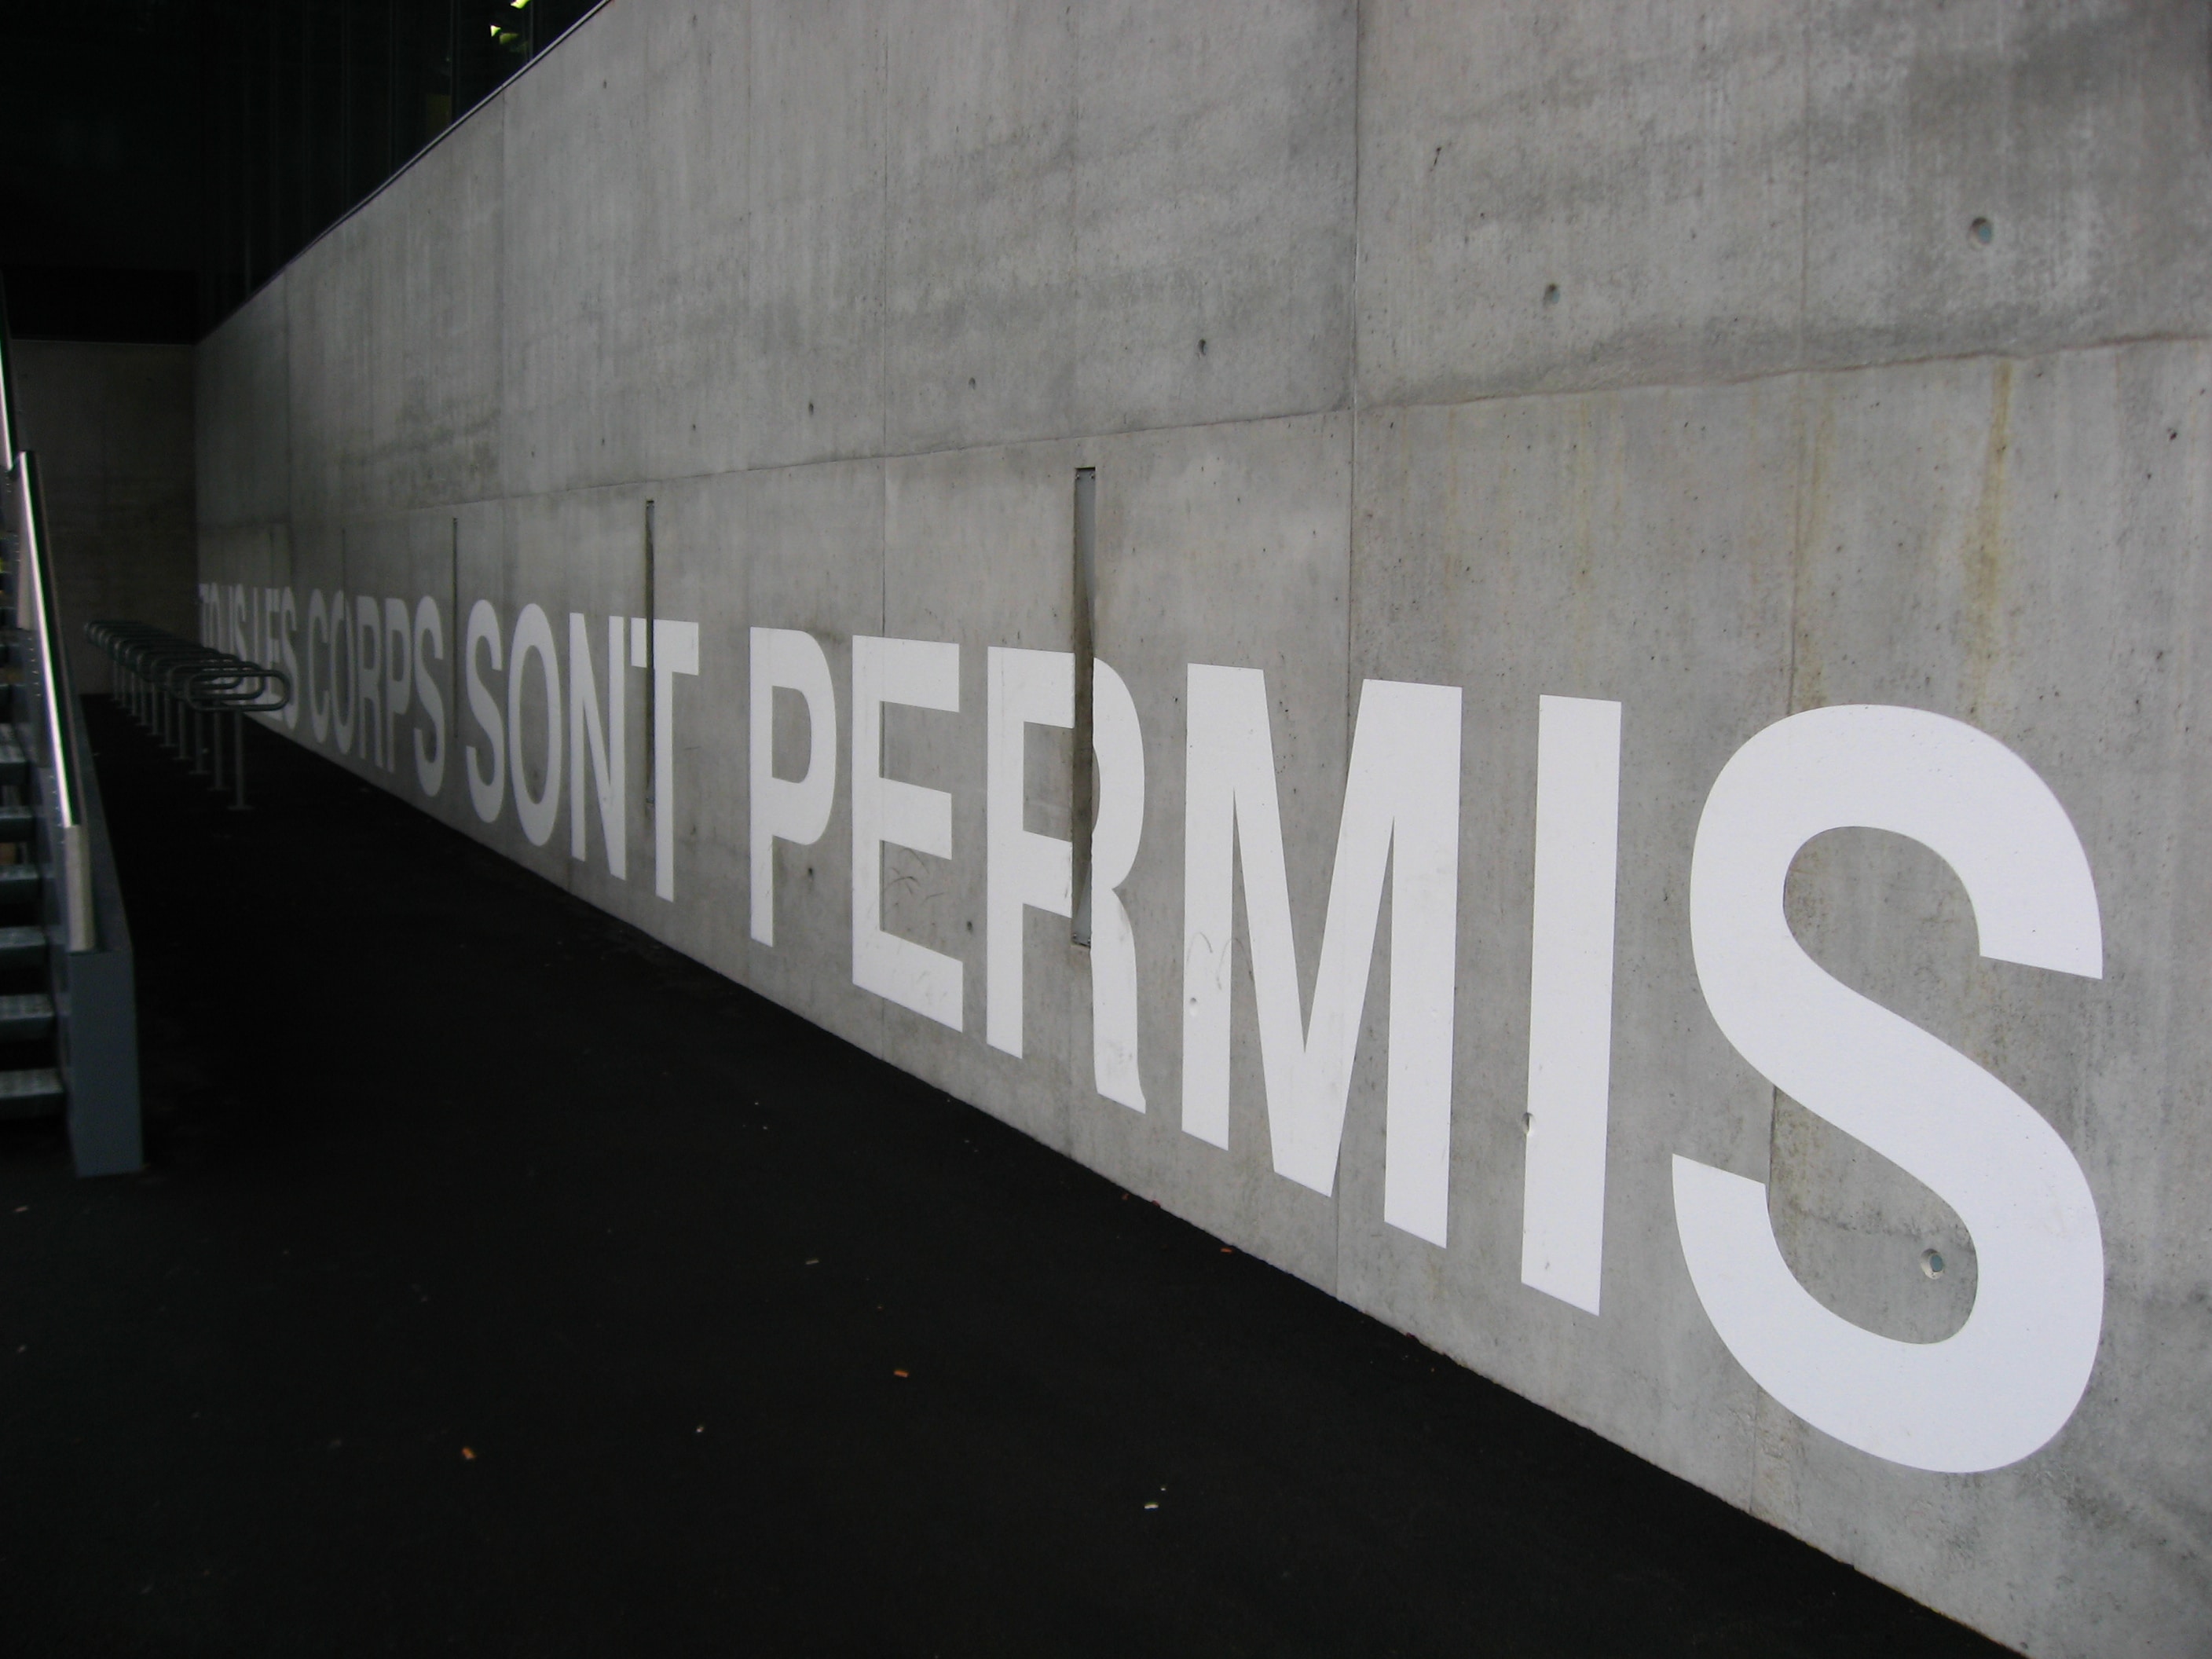 Auf einer Betonwand steht folgendes in weisser Farbe und gross geschrieben: "Tous les corps sont permis."